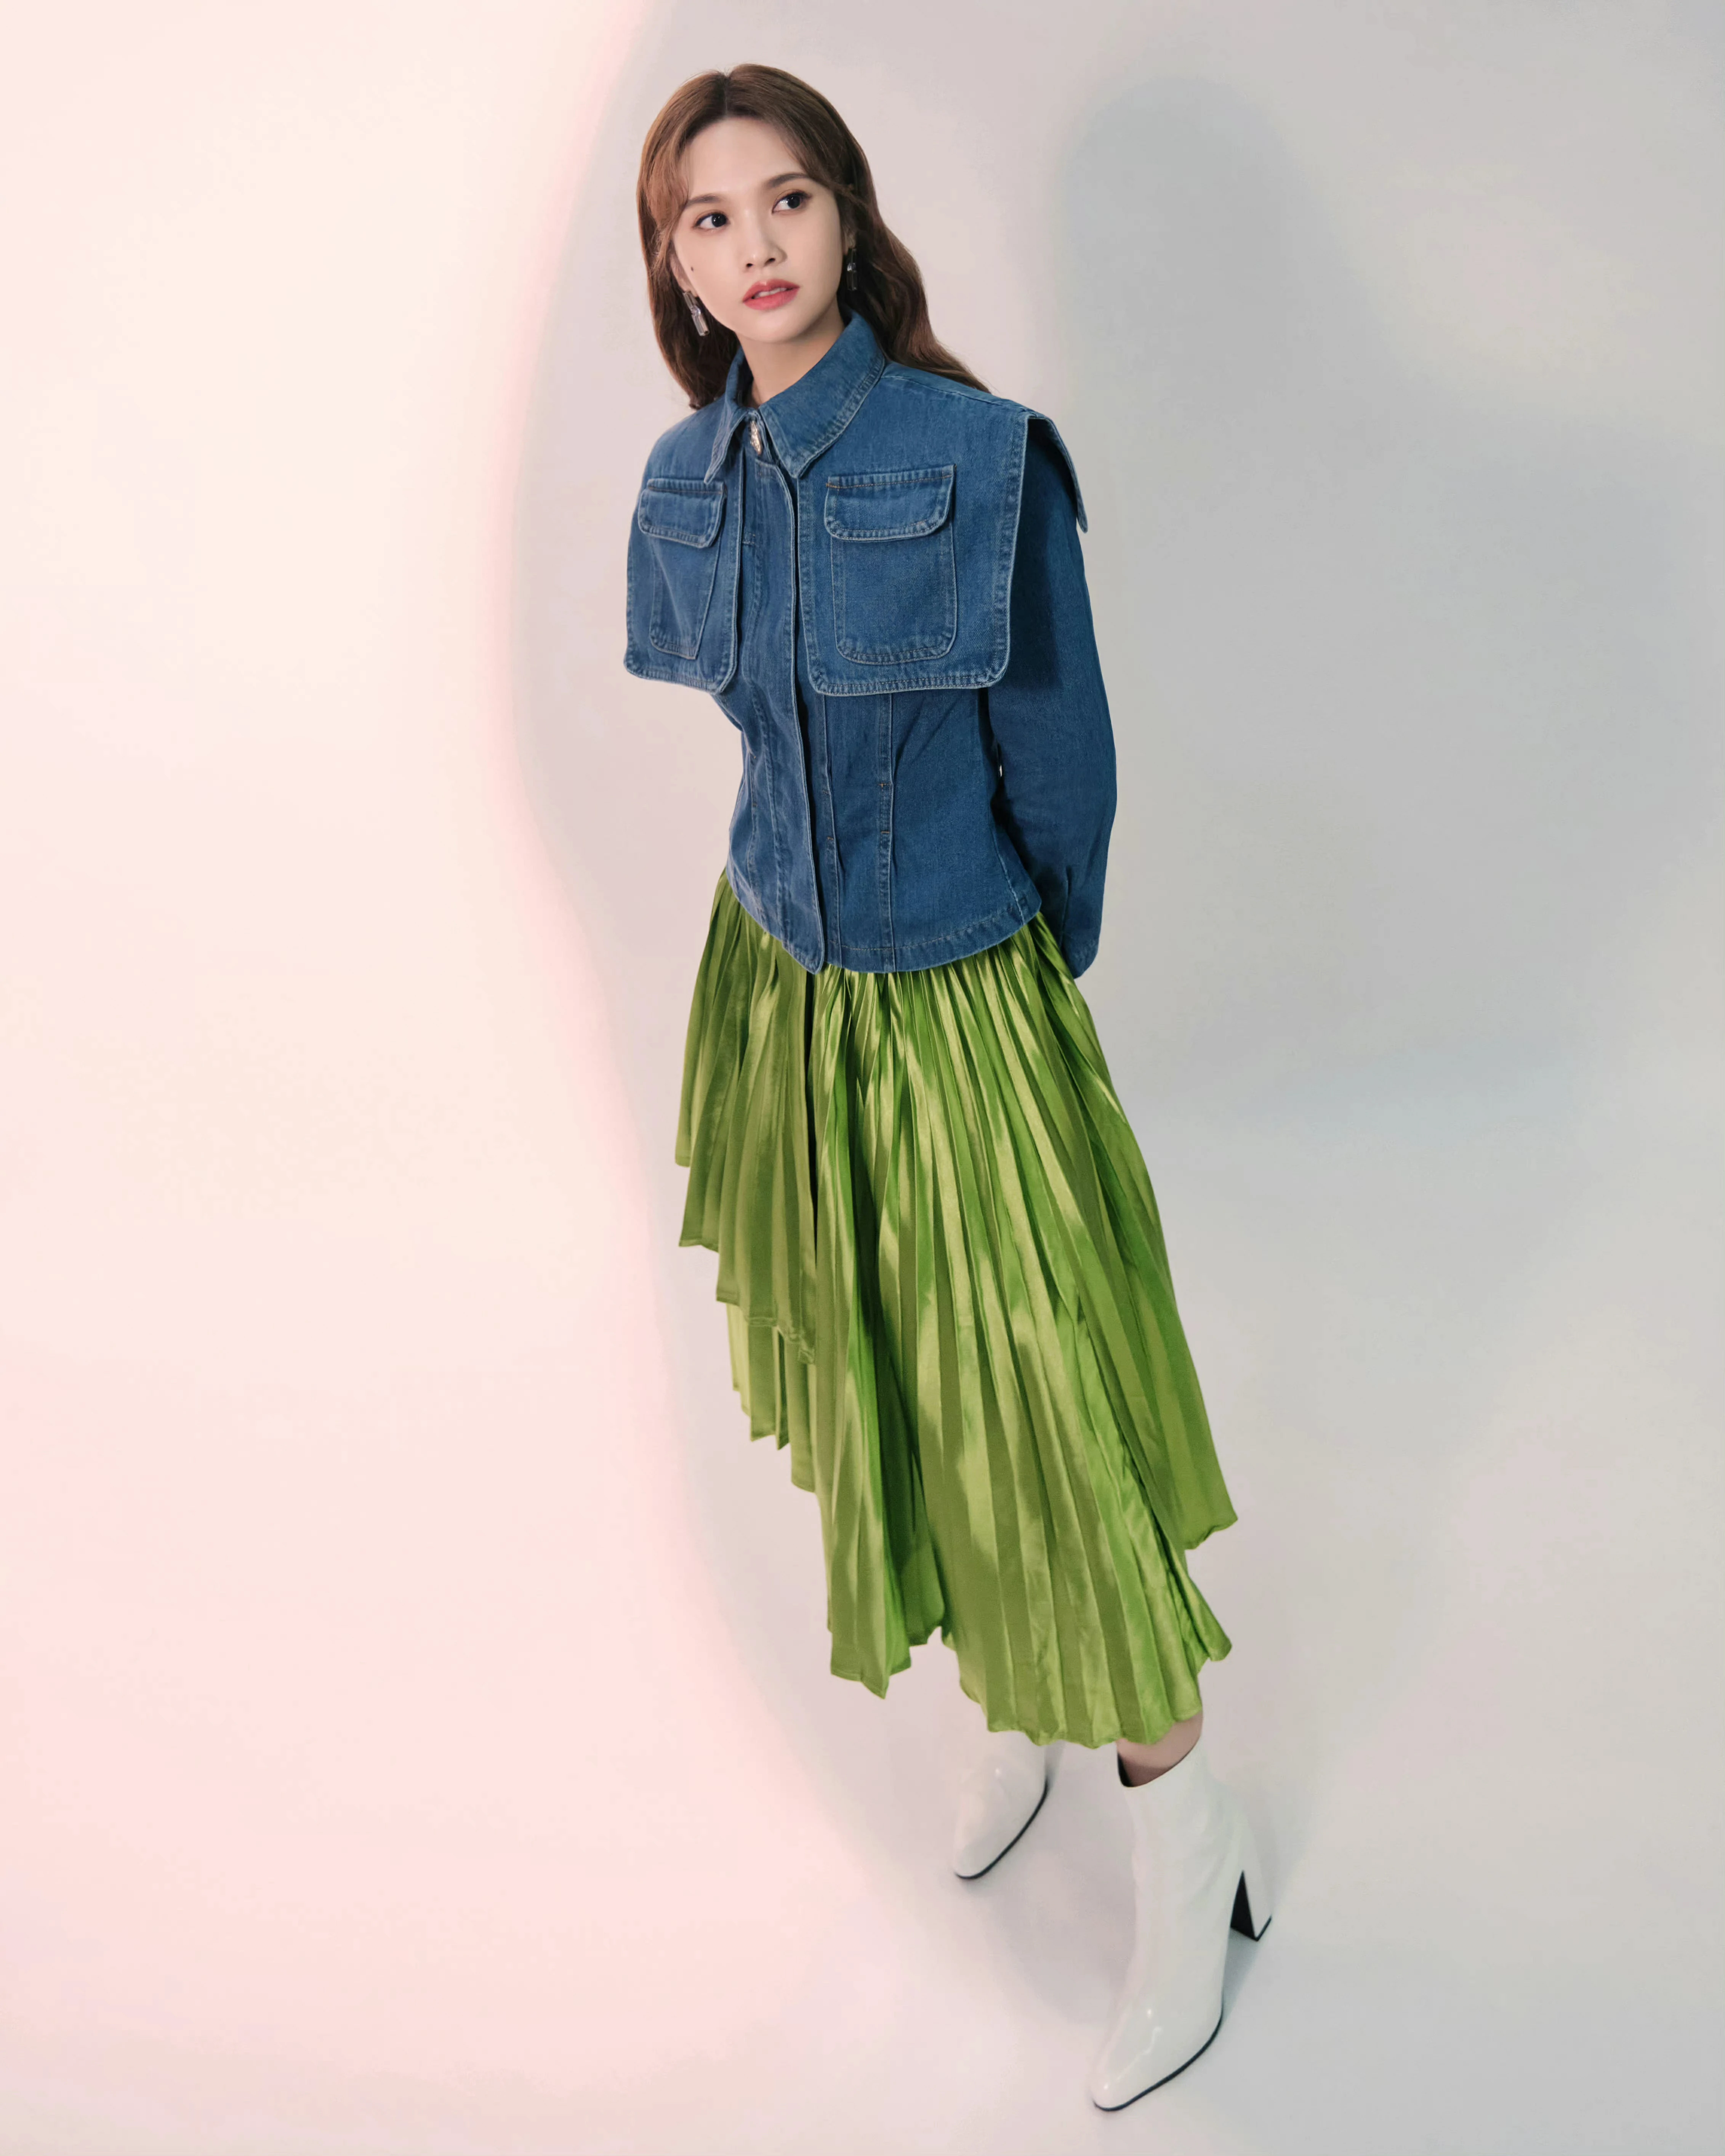 杨丞琳《我们的歌》造型写真释出 牛仔外套搭果绿半裙可甜可盐,4